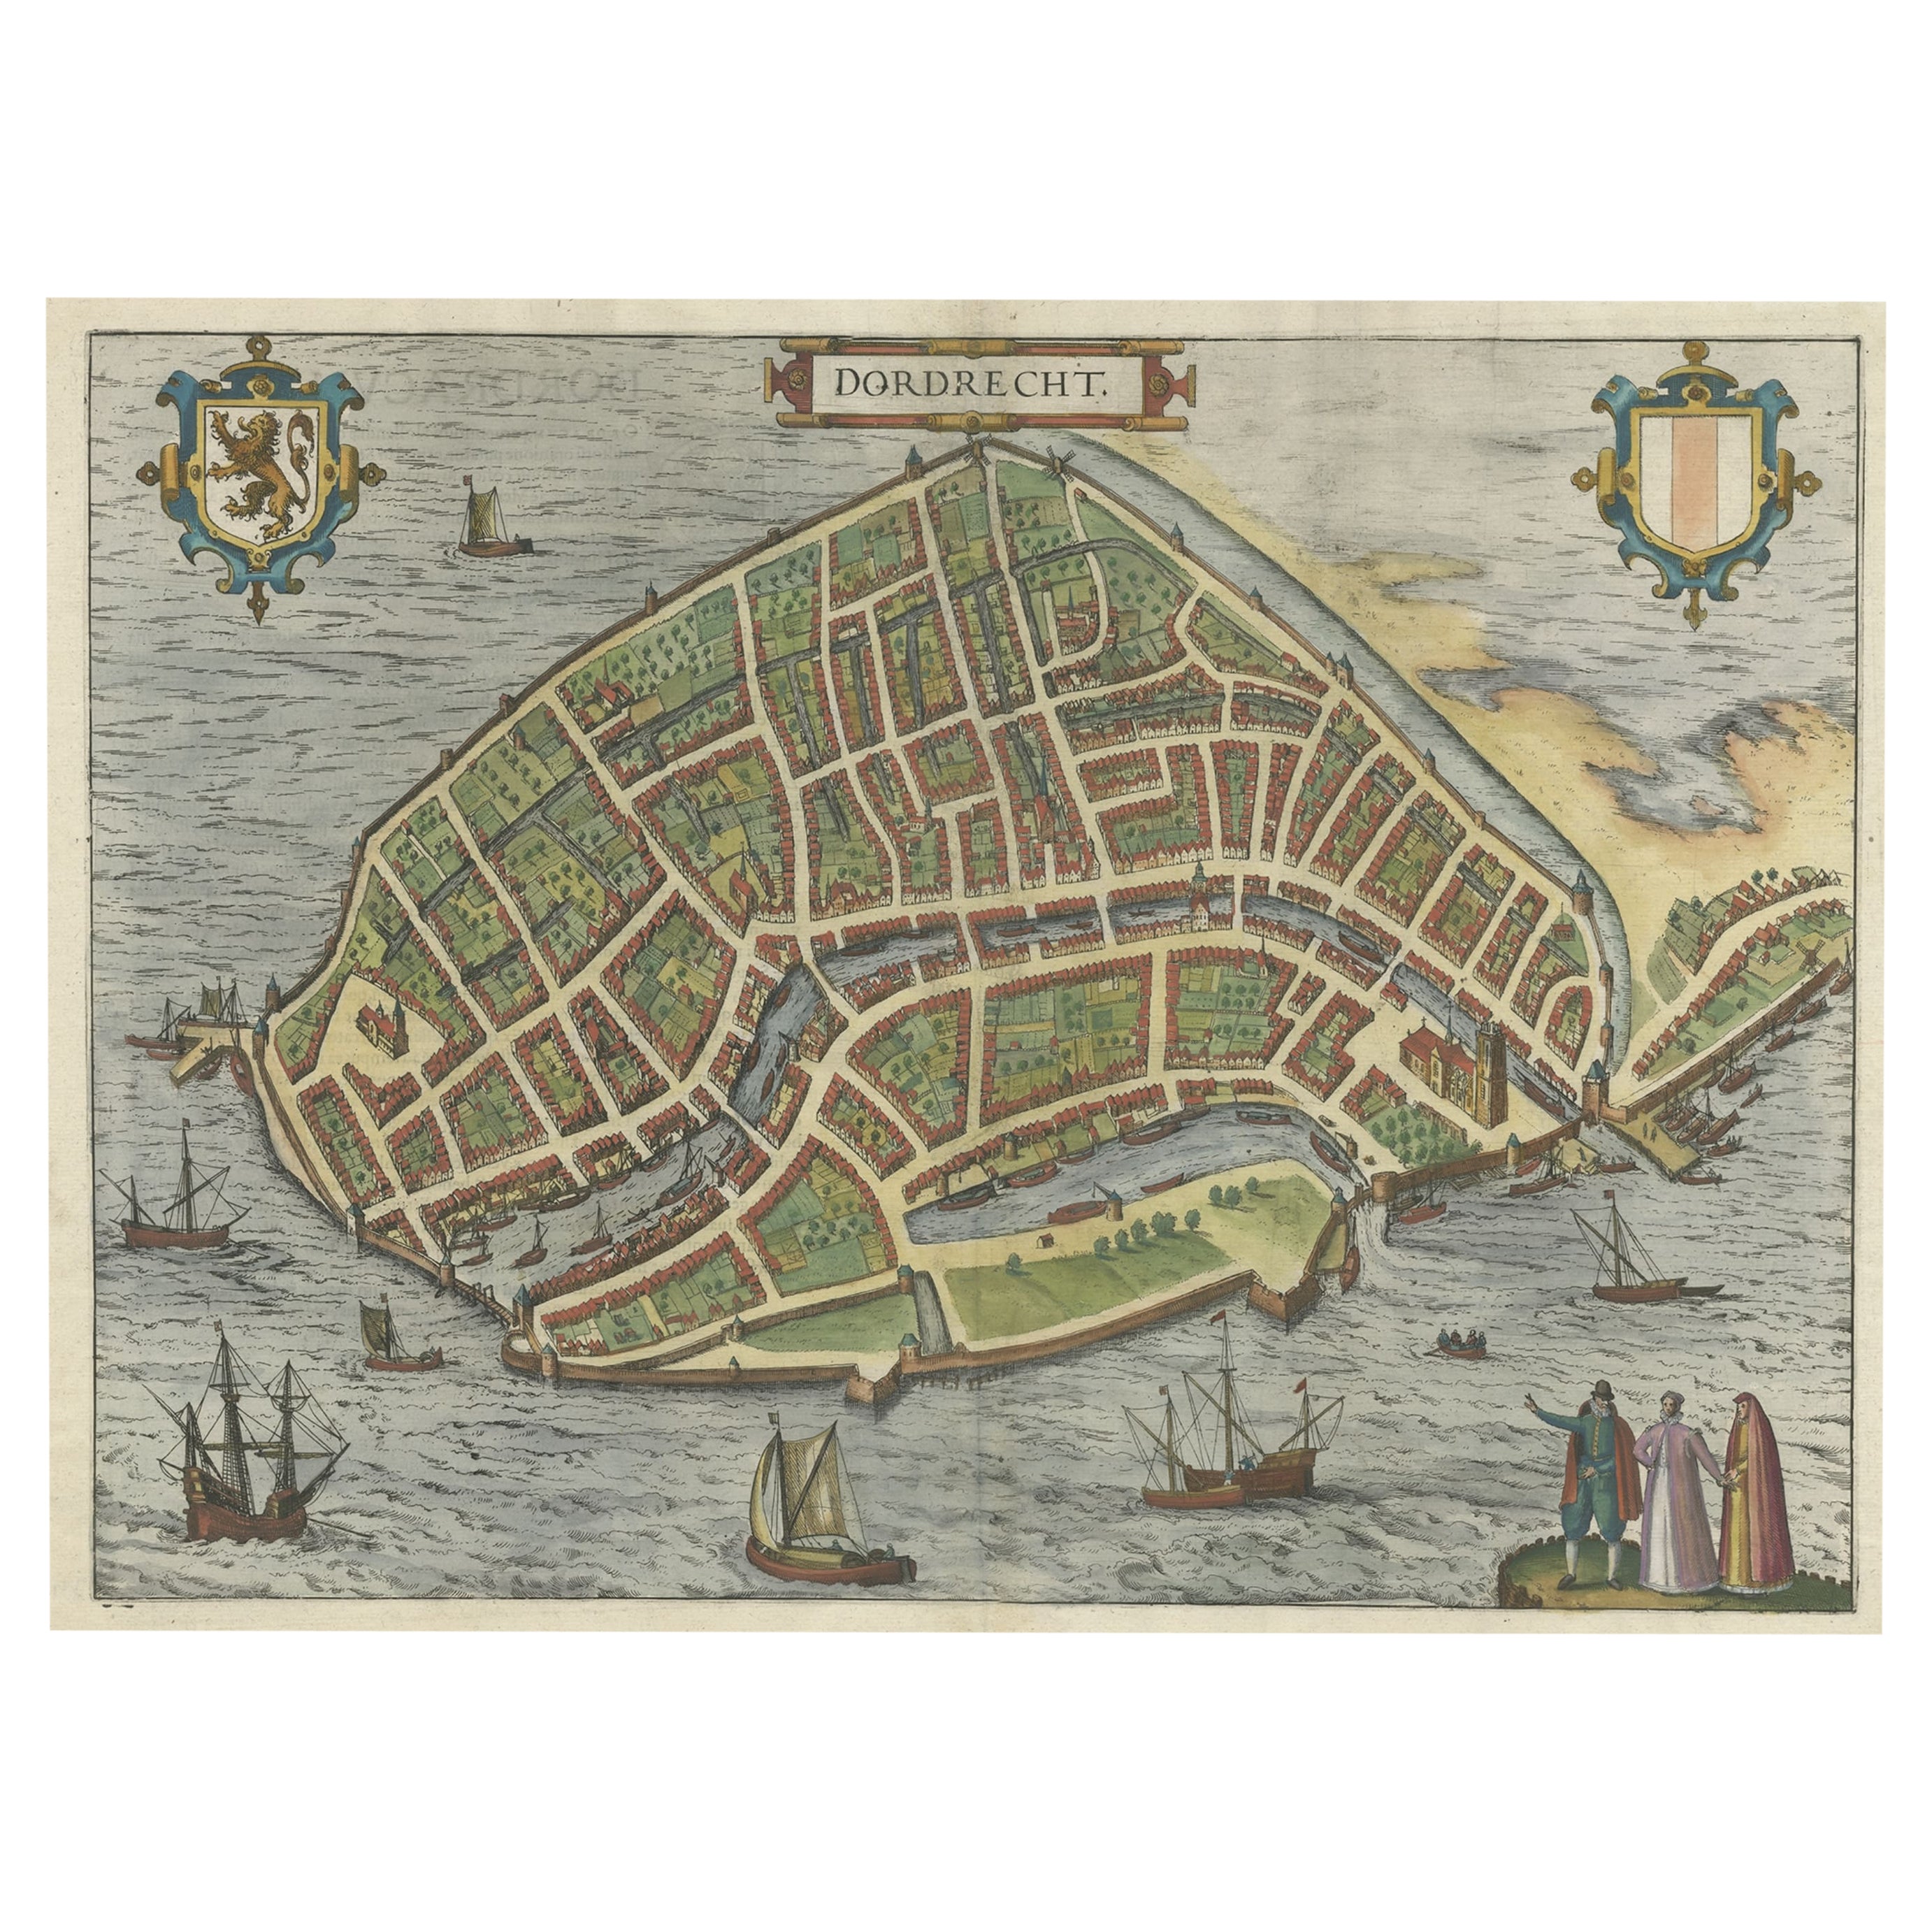 Magnifique carte dcorative ancienne de la ville de Dordrecht, Pays-Bas, 1581